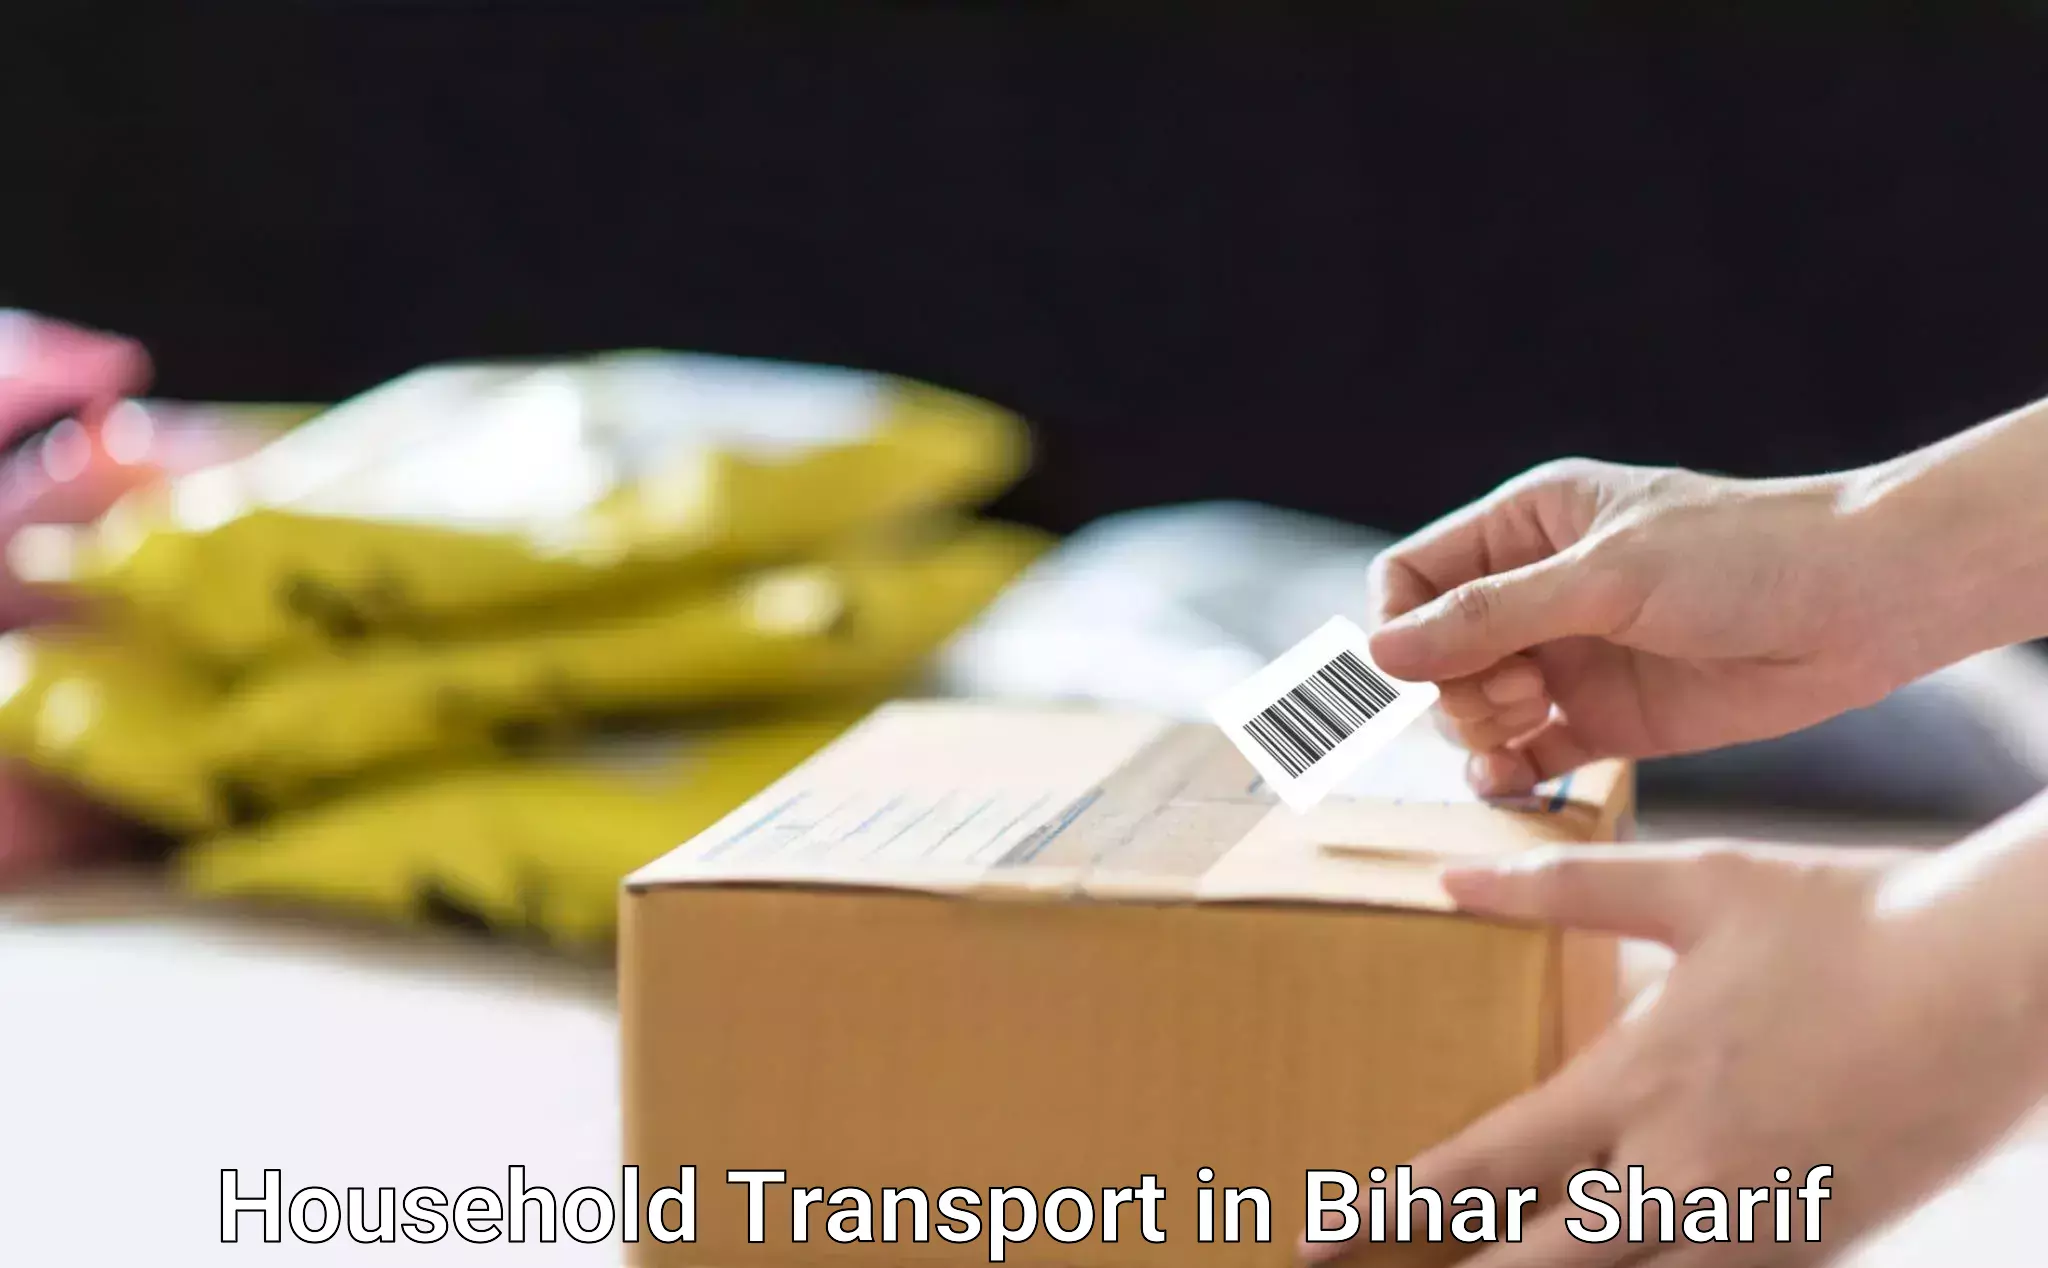 Home goods transportation in Bihar Sharif